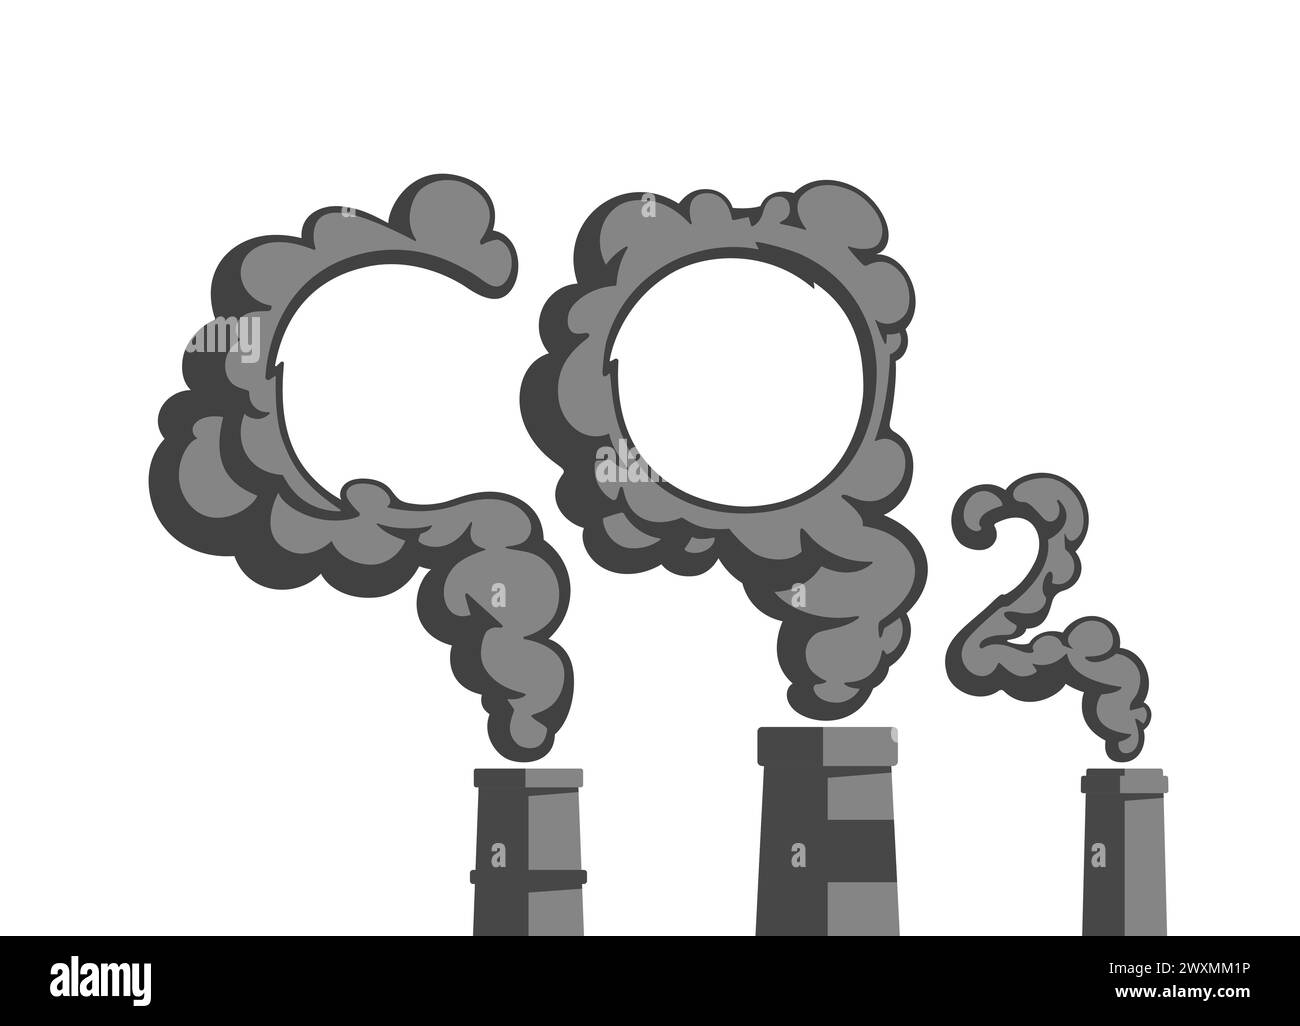 Émissions de dioxyde de carbone (CO2) de l'usine industrielle. Cheminées d'usine. Concept de pollution de l'environnement. Illustration vectorielle plate. Illustration de Vecteur